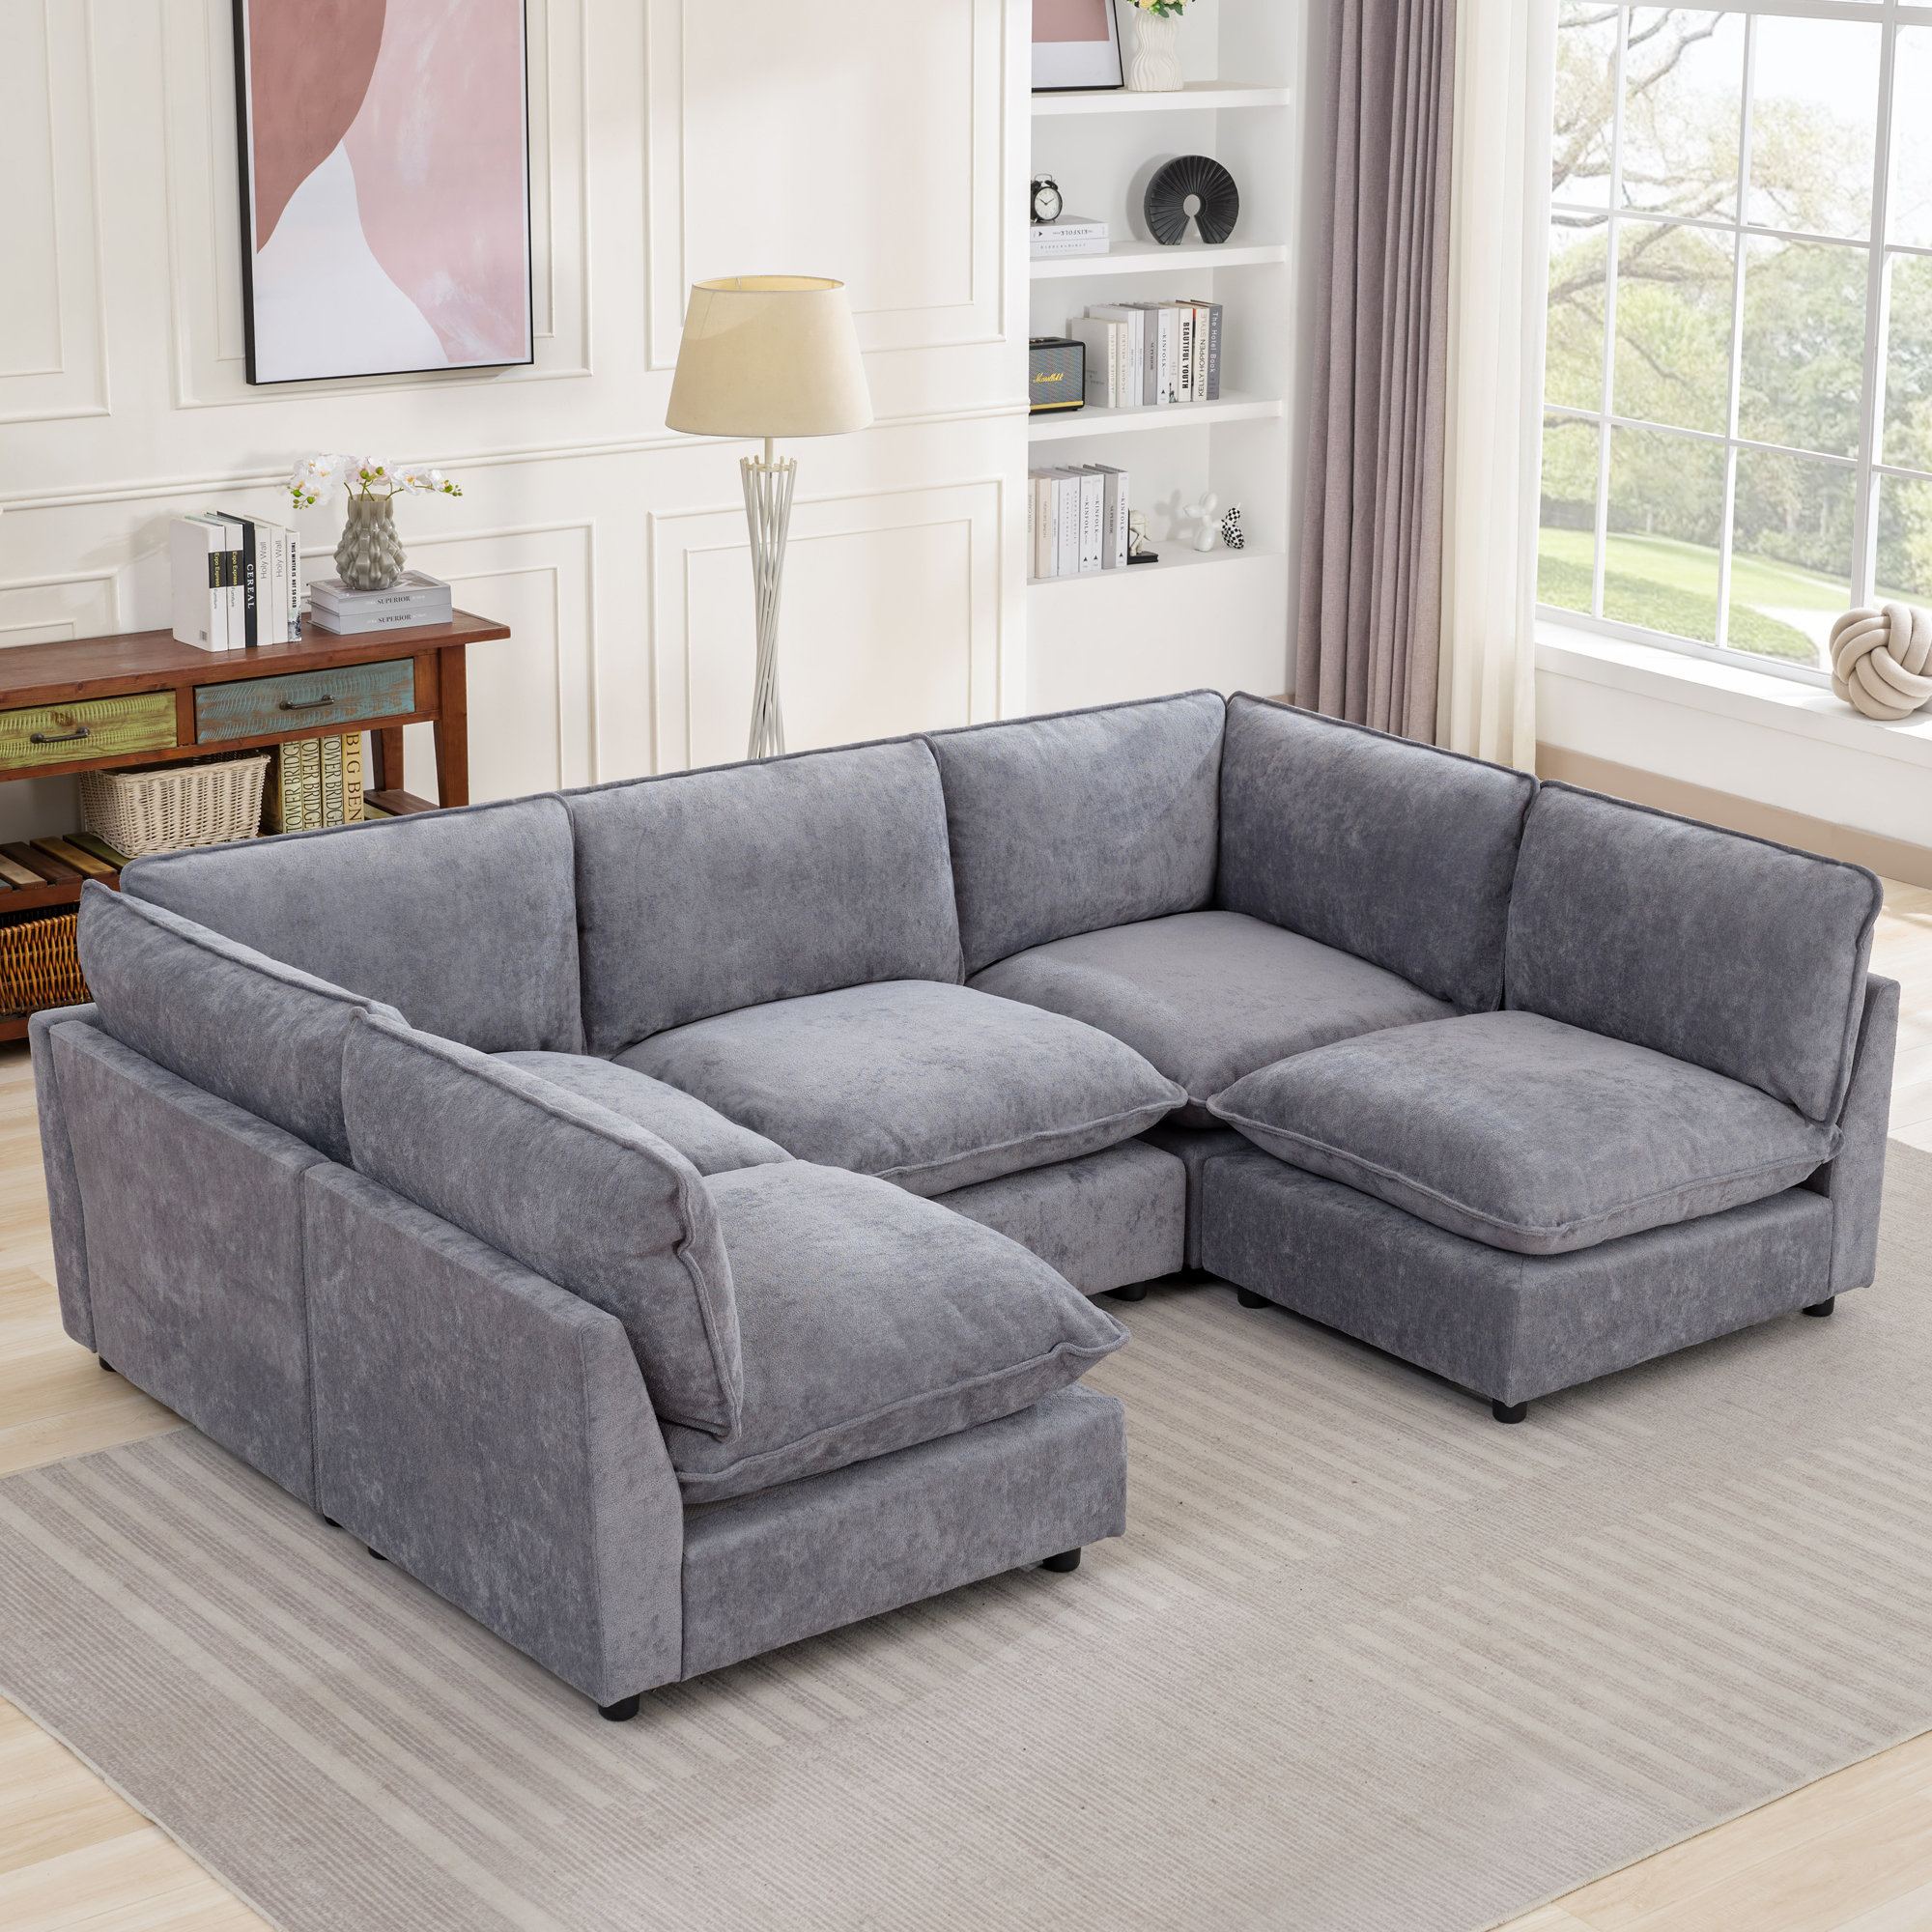 Modular and composable sofas: an innovative design